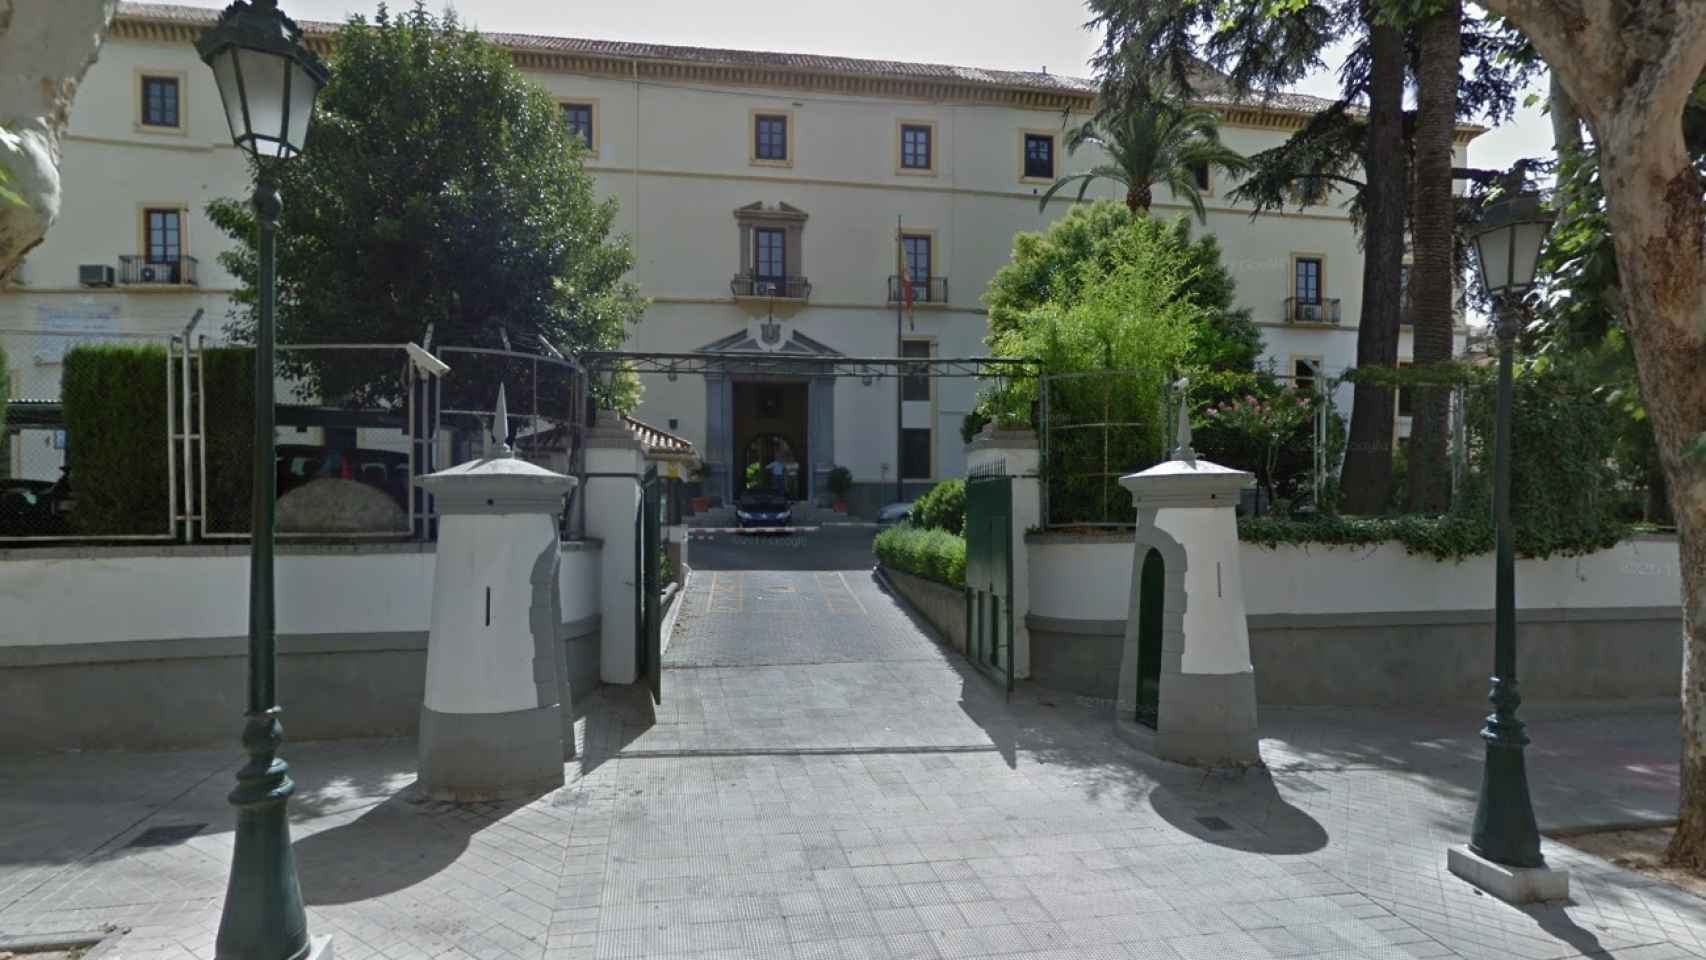 Hallan muerto a un militar en el puesto de vigilancia del Madoc en Granada